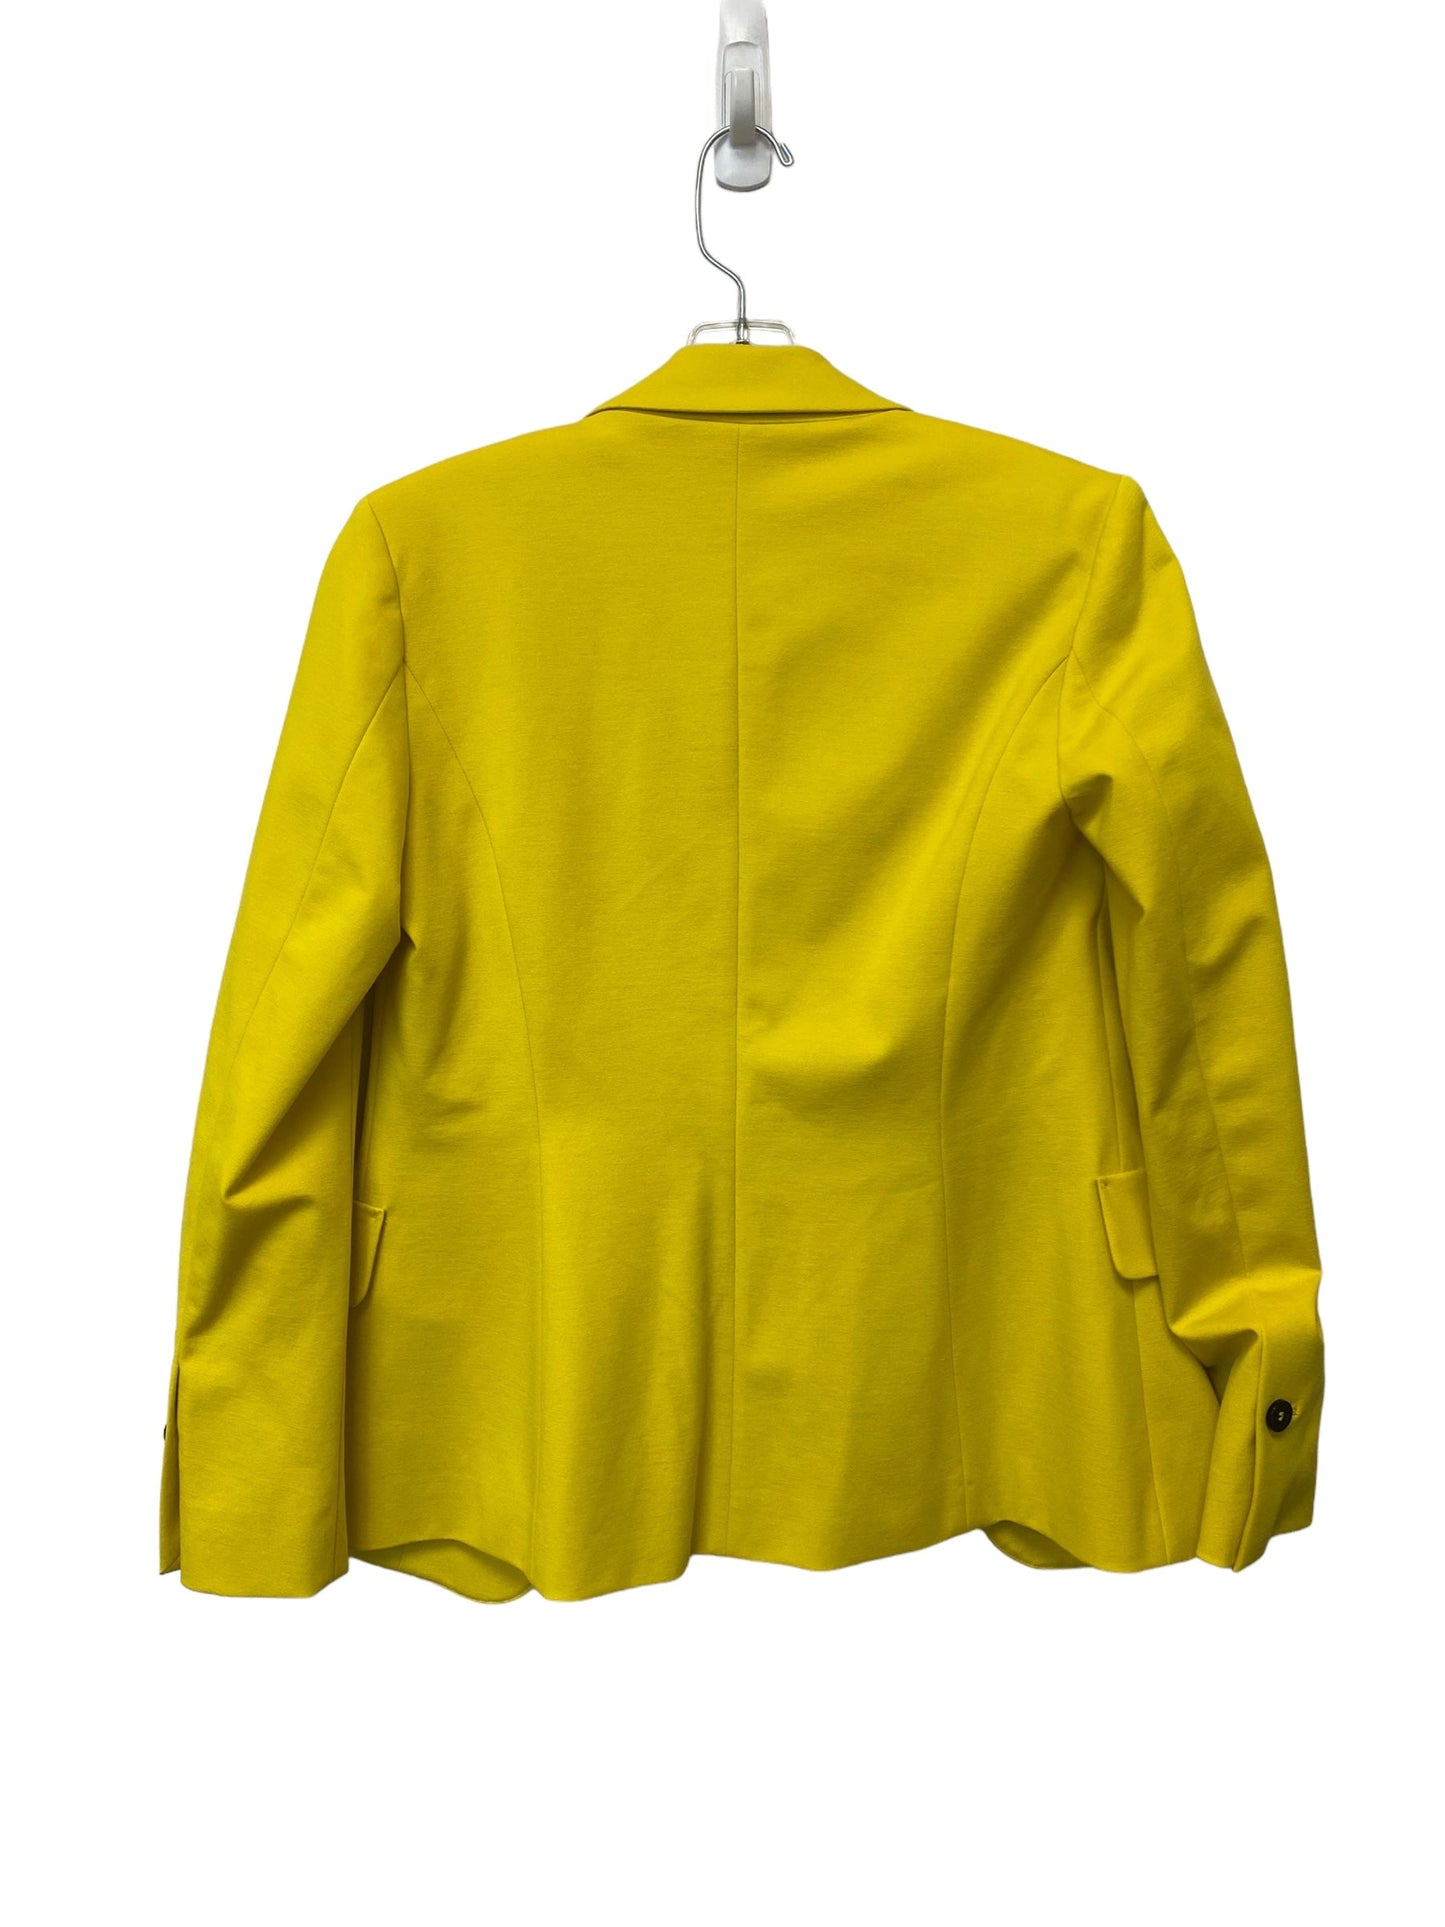 Yellow Blazer Clothes Mentor, Size 2